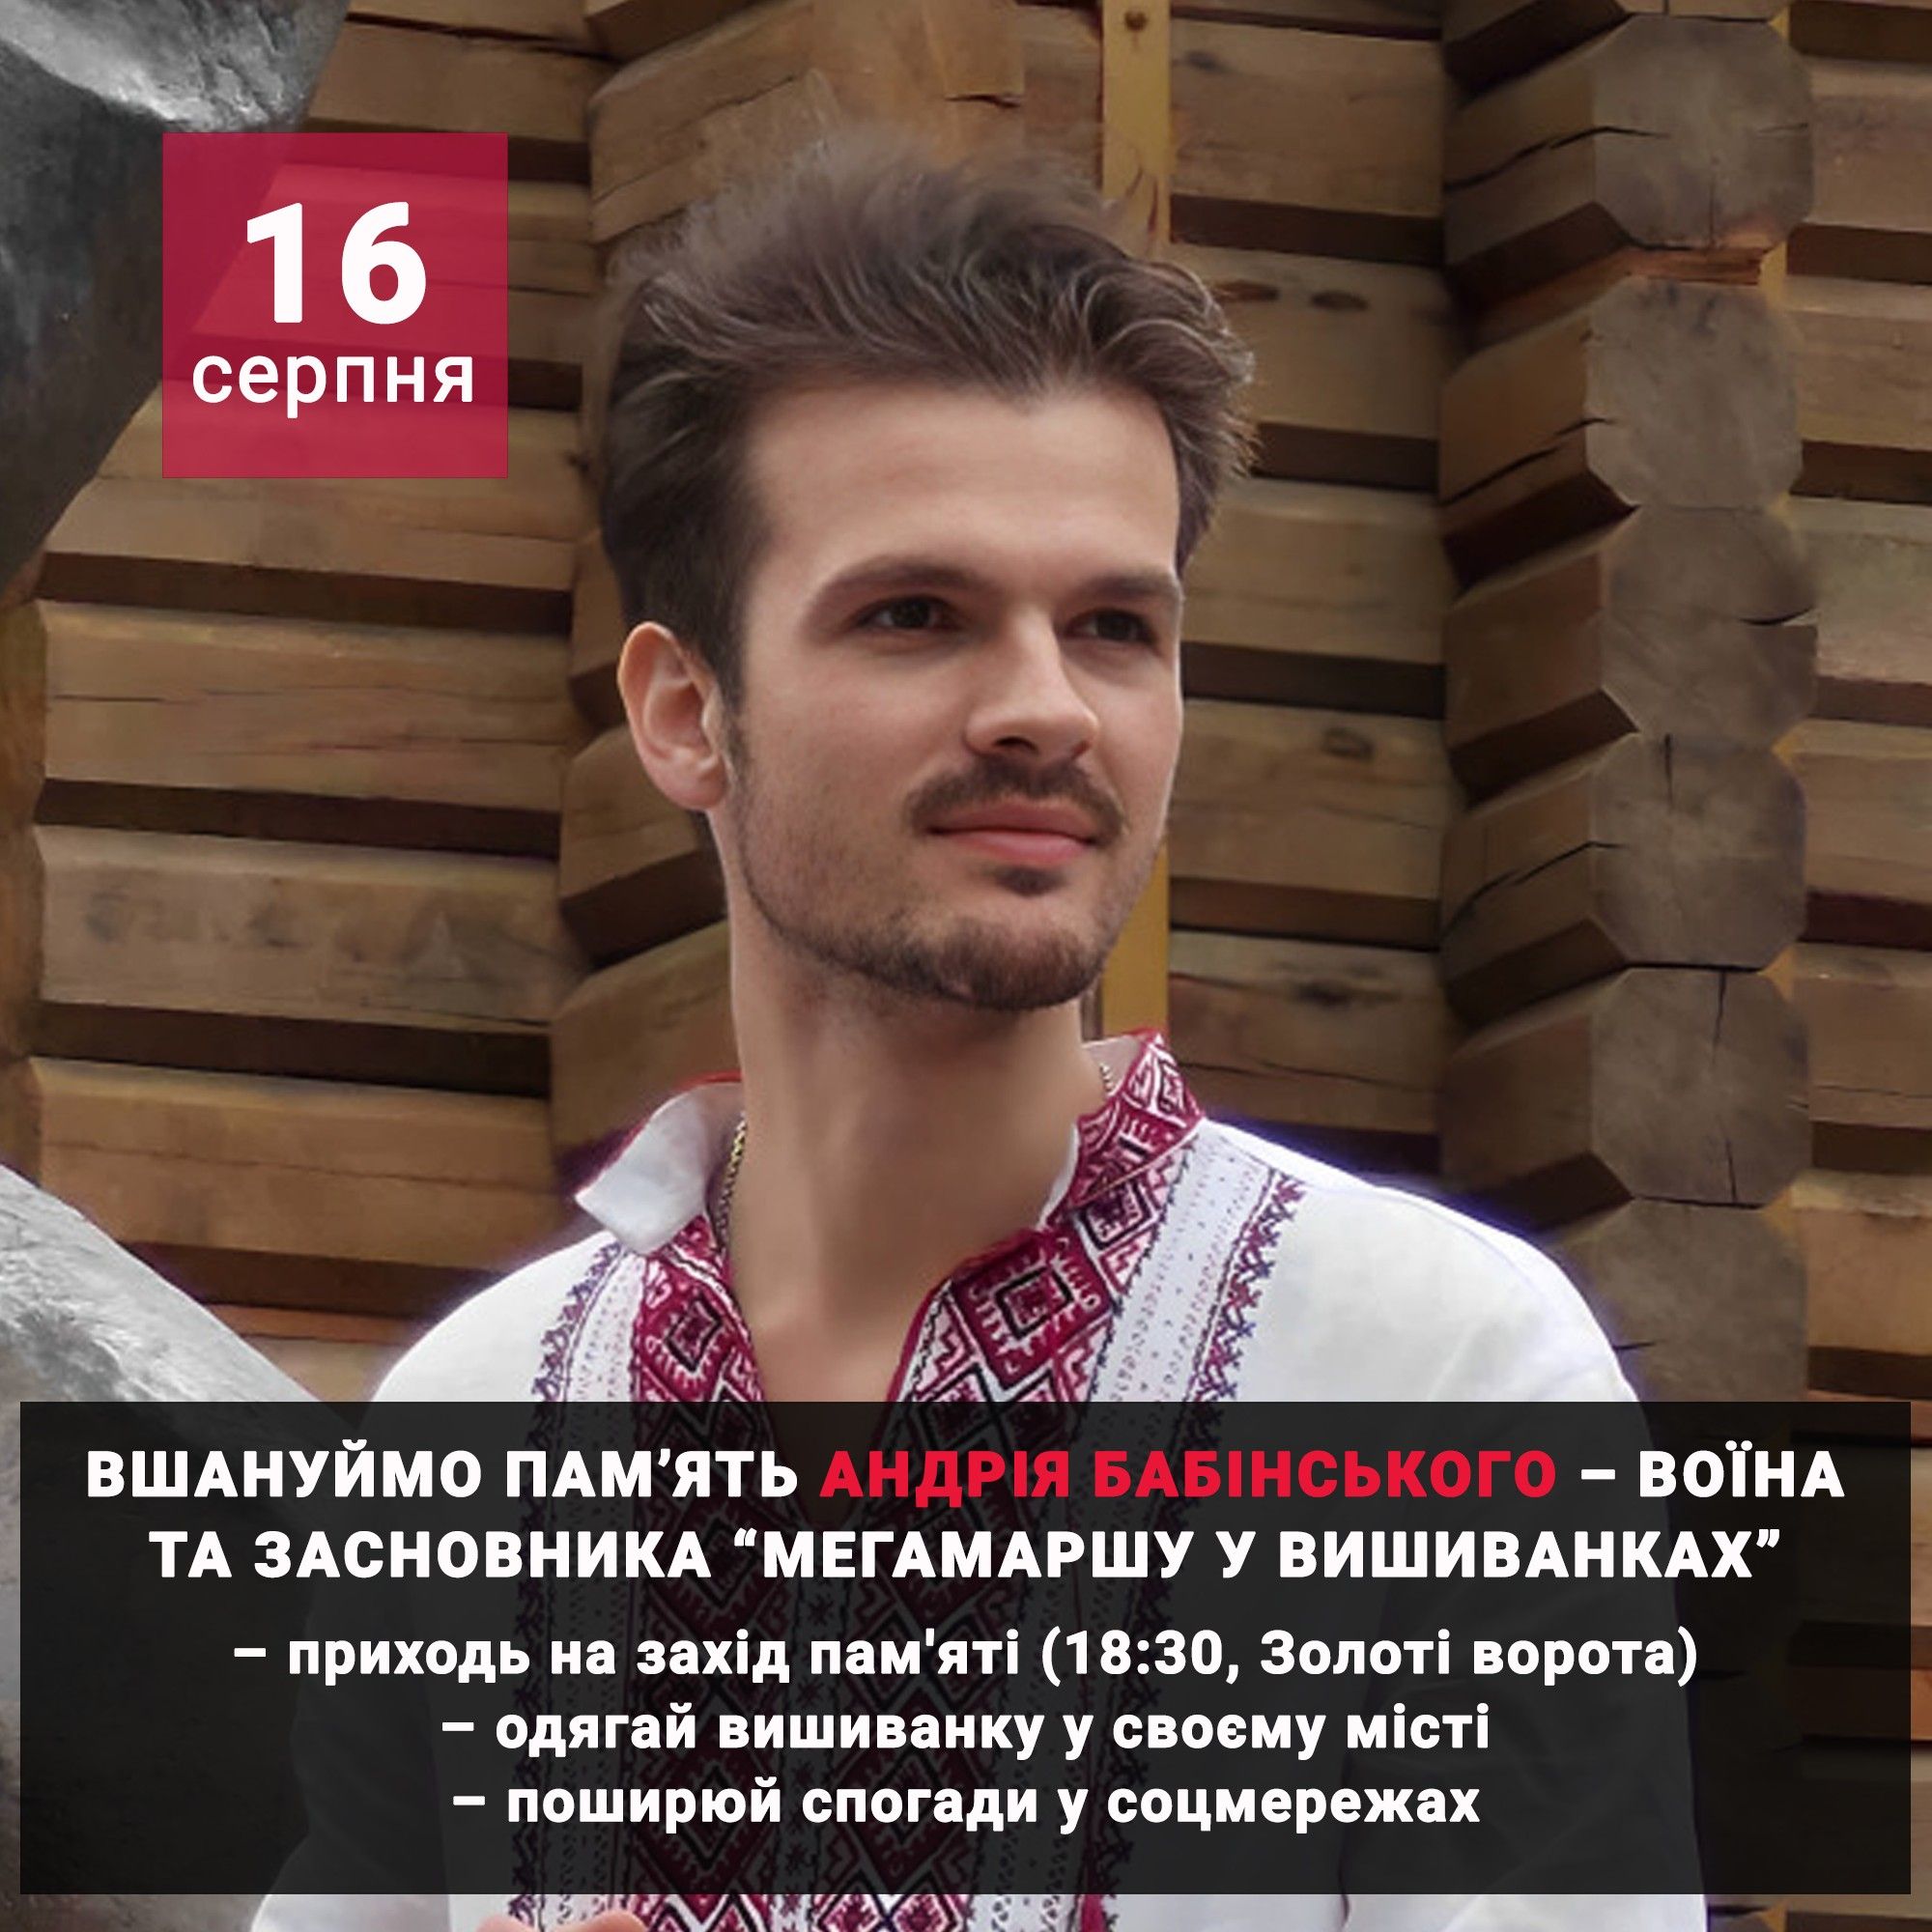 У Києві вшанують воїна та засновника «Мегамаршу у вишиванках» Андрія Бабінського